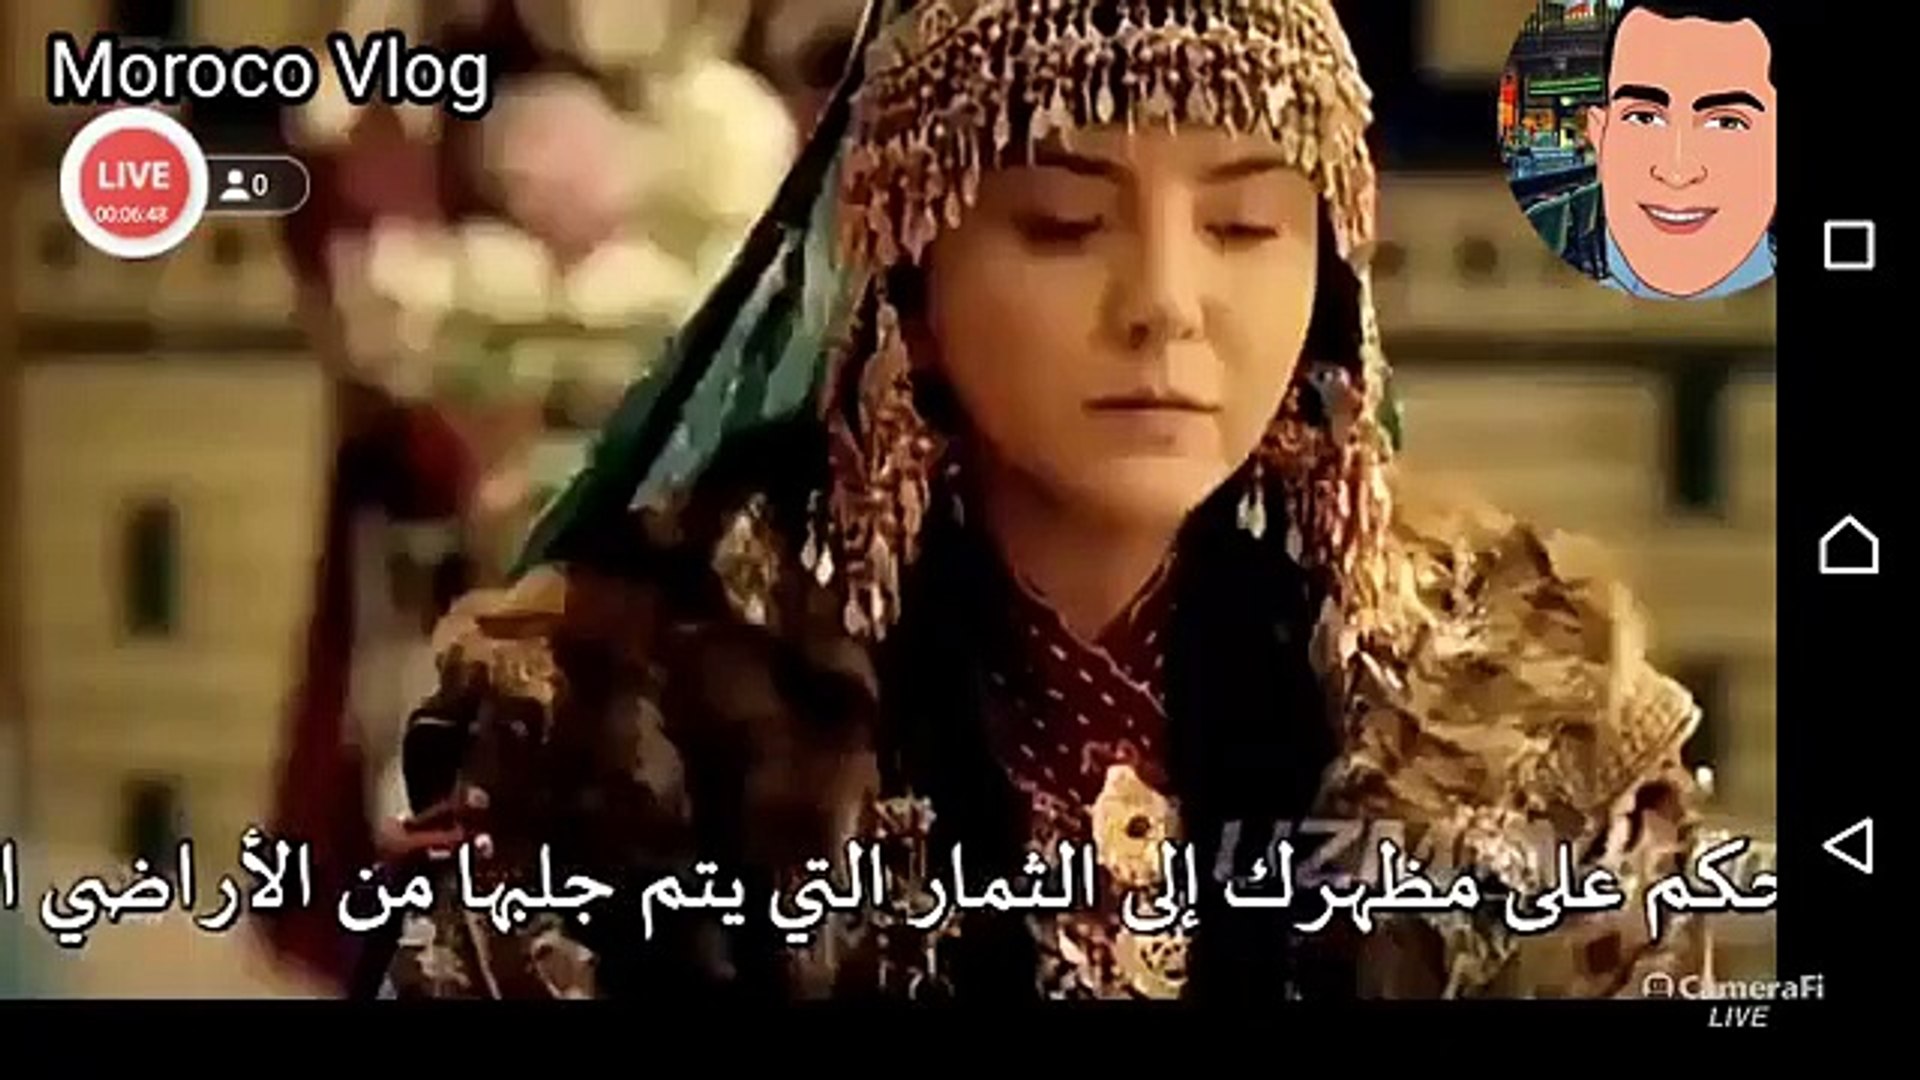 جلال الدين خوارزم شاة الحلقة 2 مترجم للعربية - فيديو Dailymotion